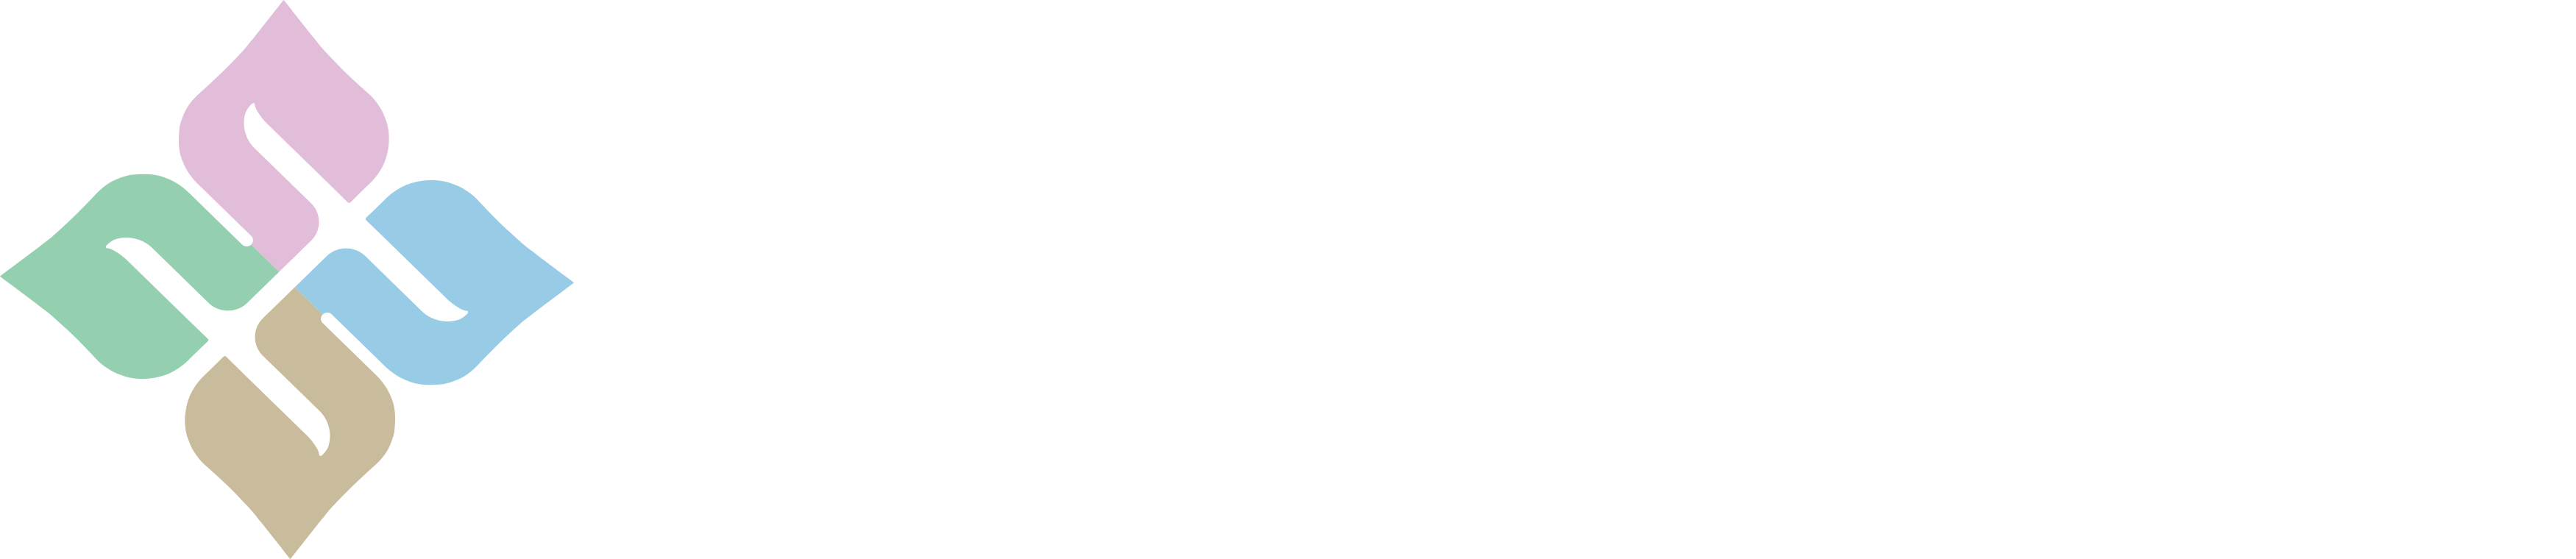 時空繆囊系列_广州市花木采研生物科技有限公司